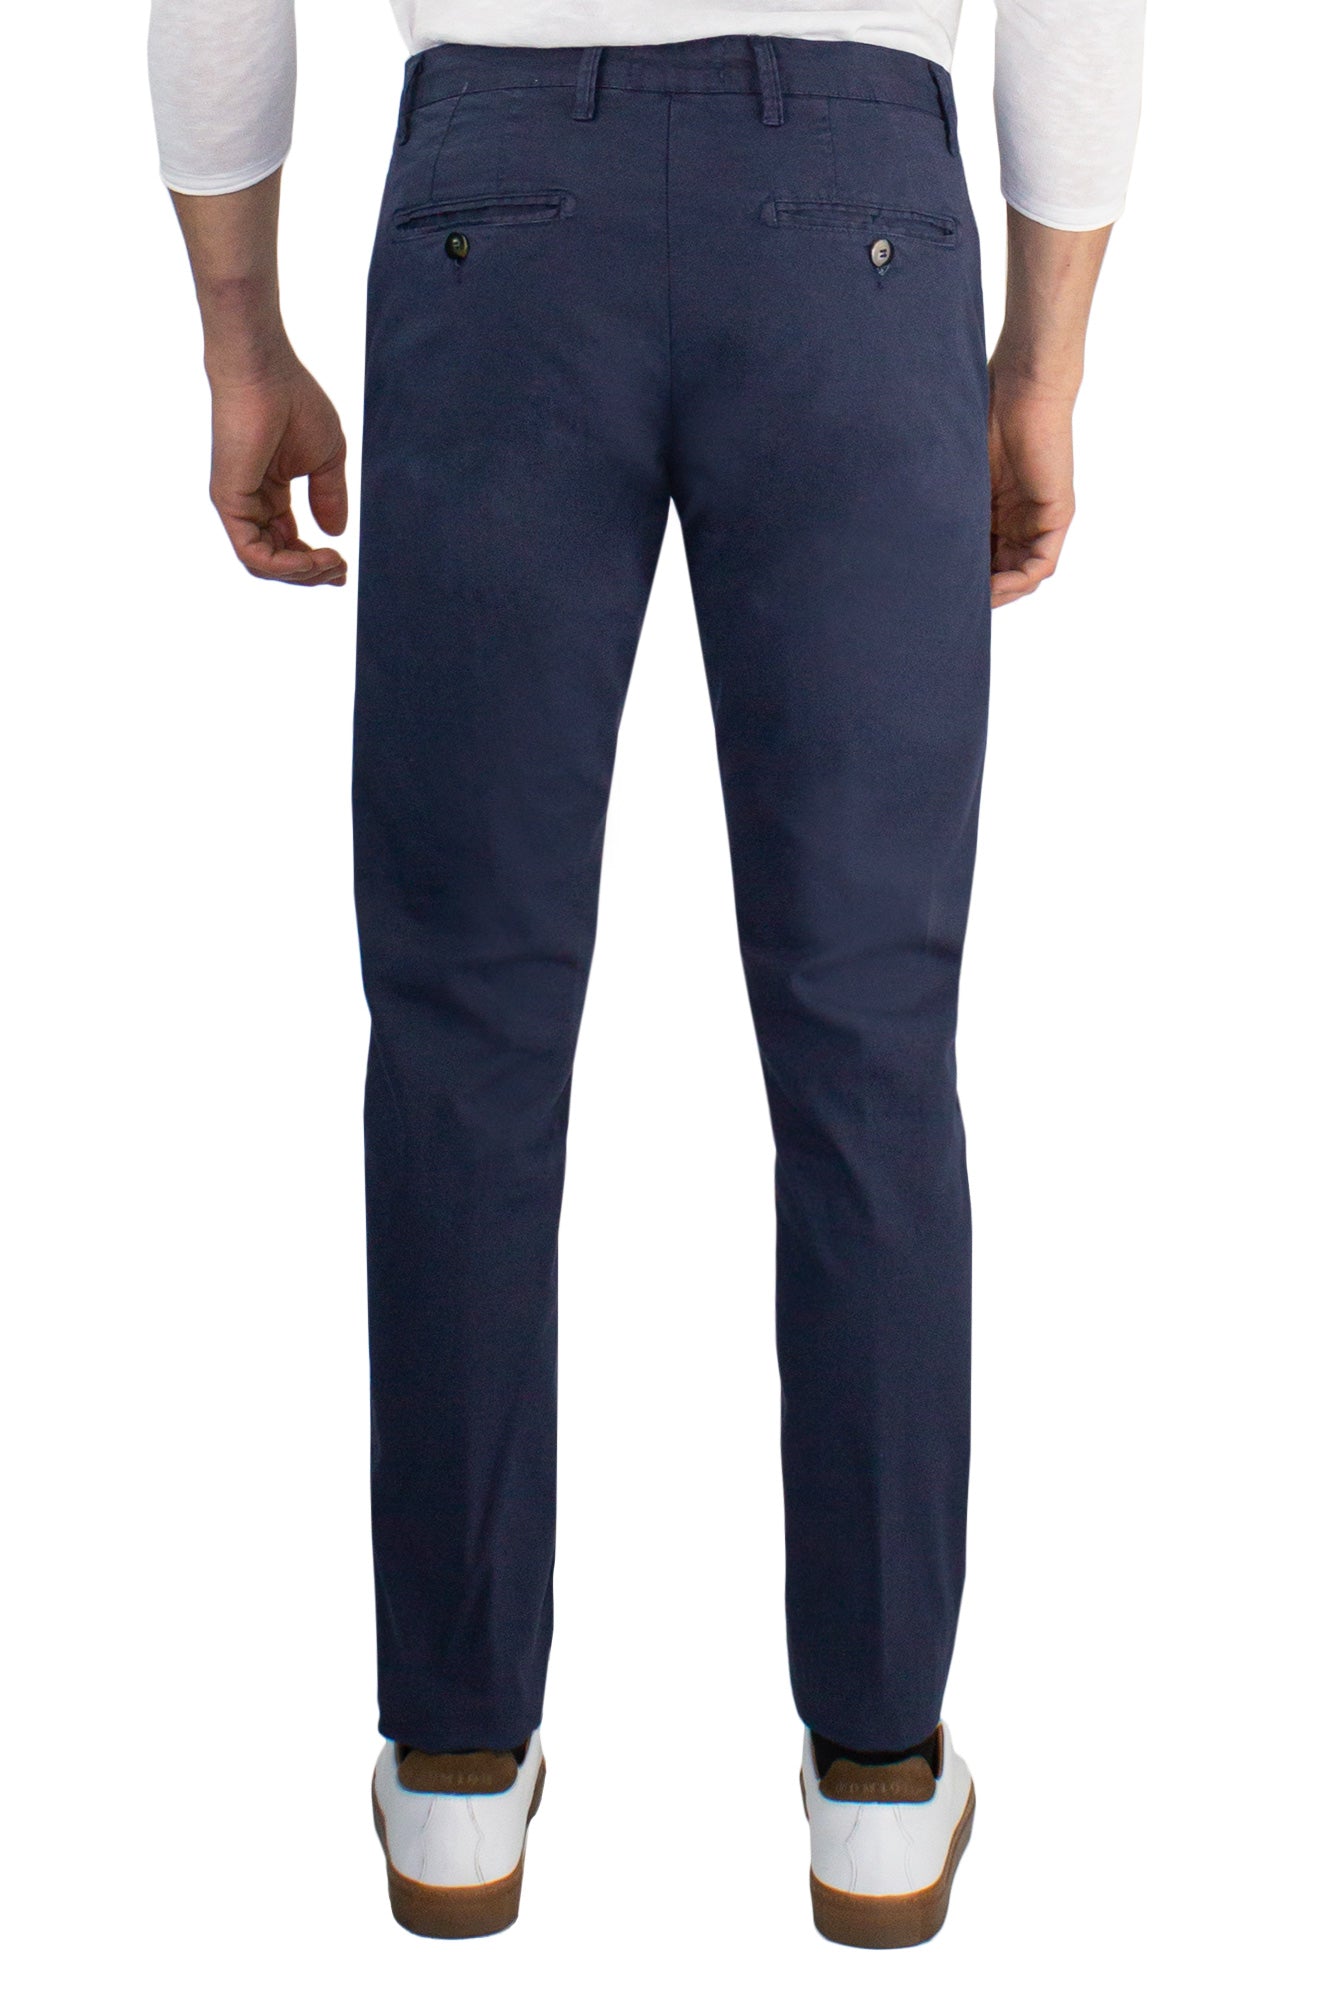 Pantalone chino in cotone stretch armatura